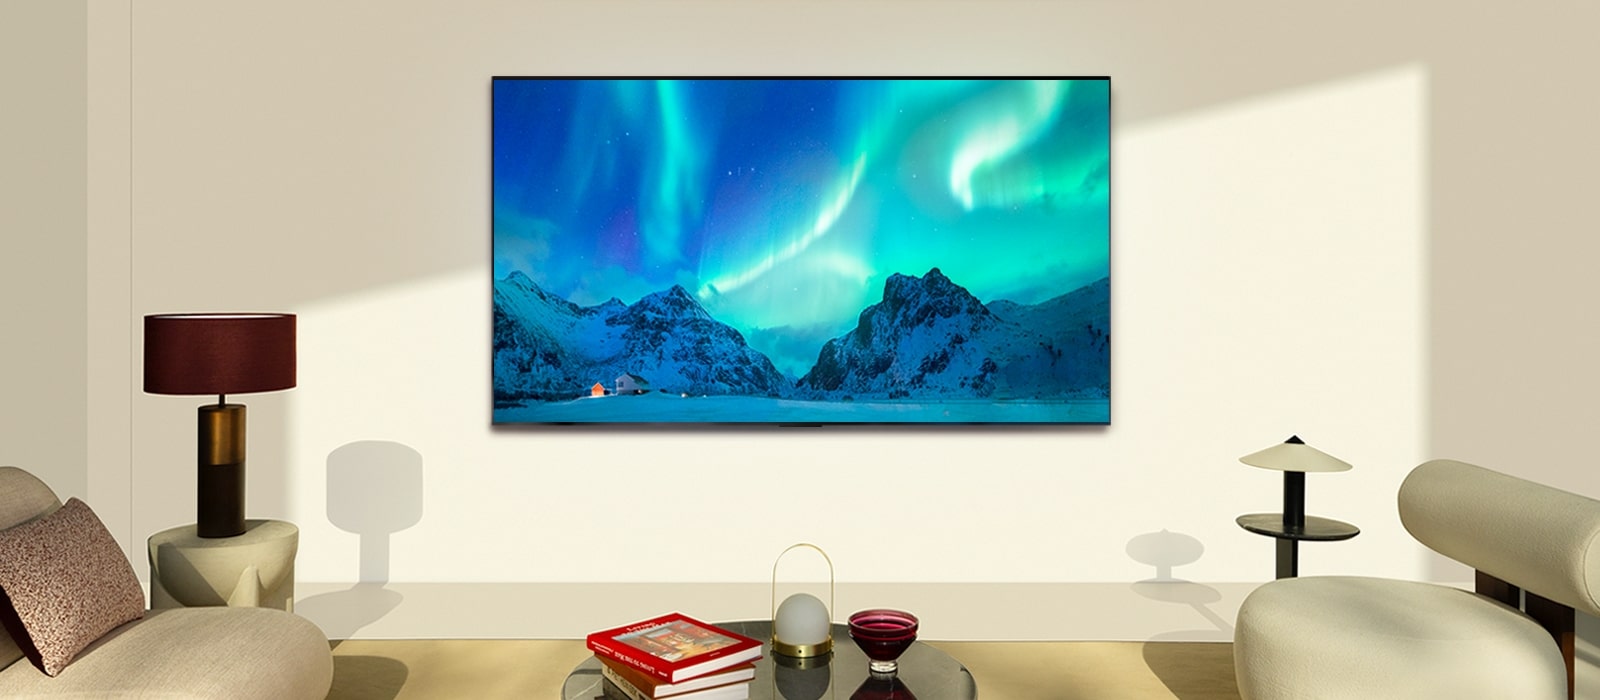 LG OLED TV w nowoczesnej przestrzeni dziennej. Obraz zorzy polarnej wyświetlany jest z idealnym poziomem jasności.